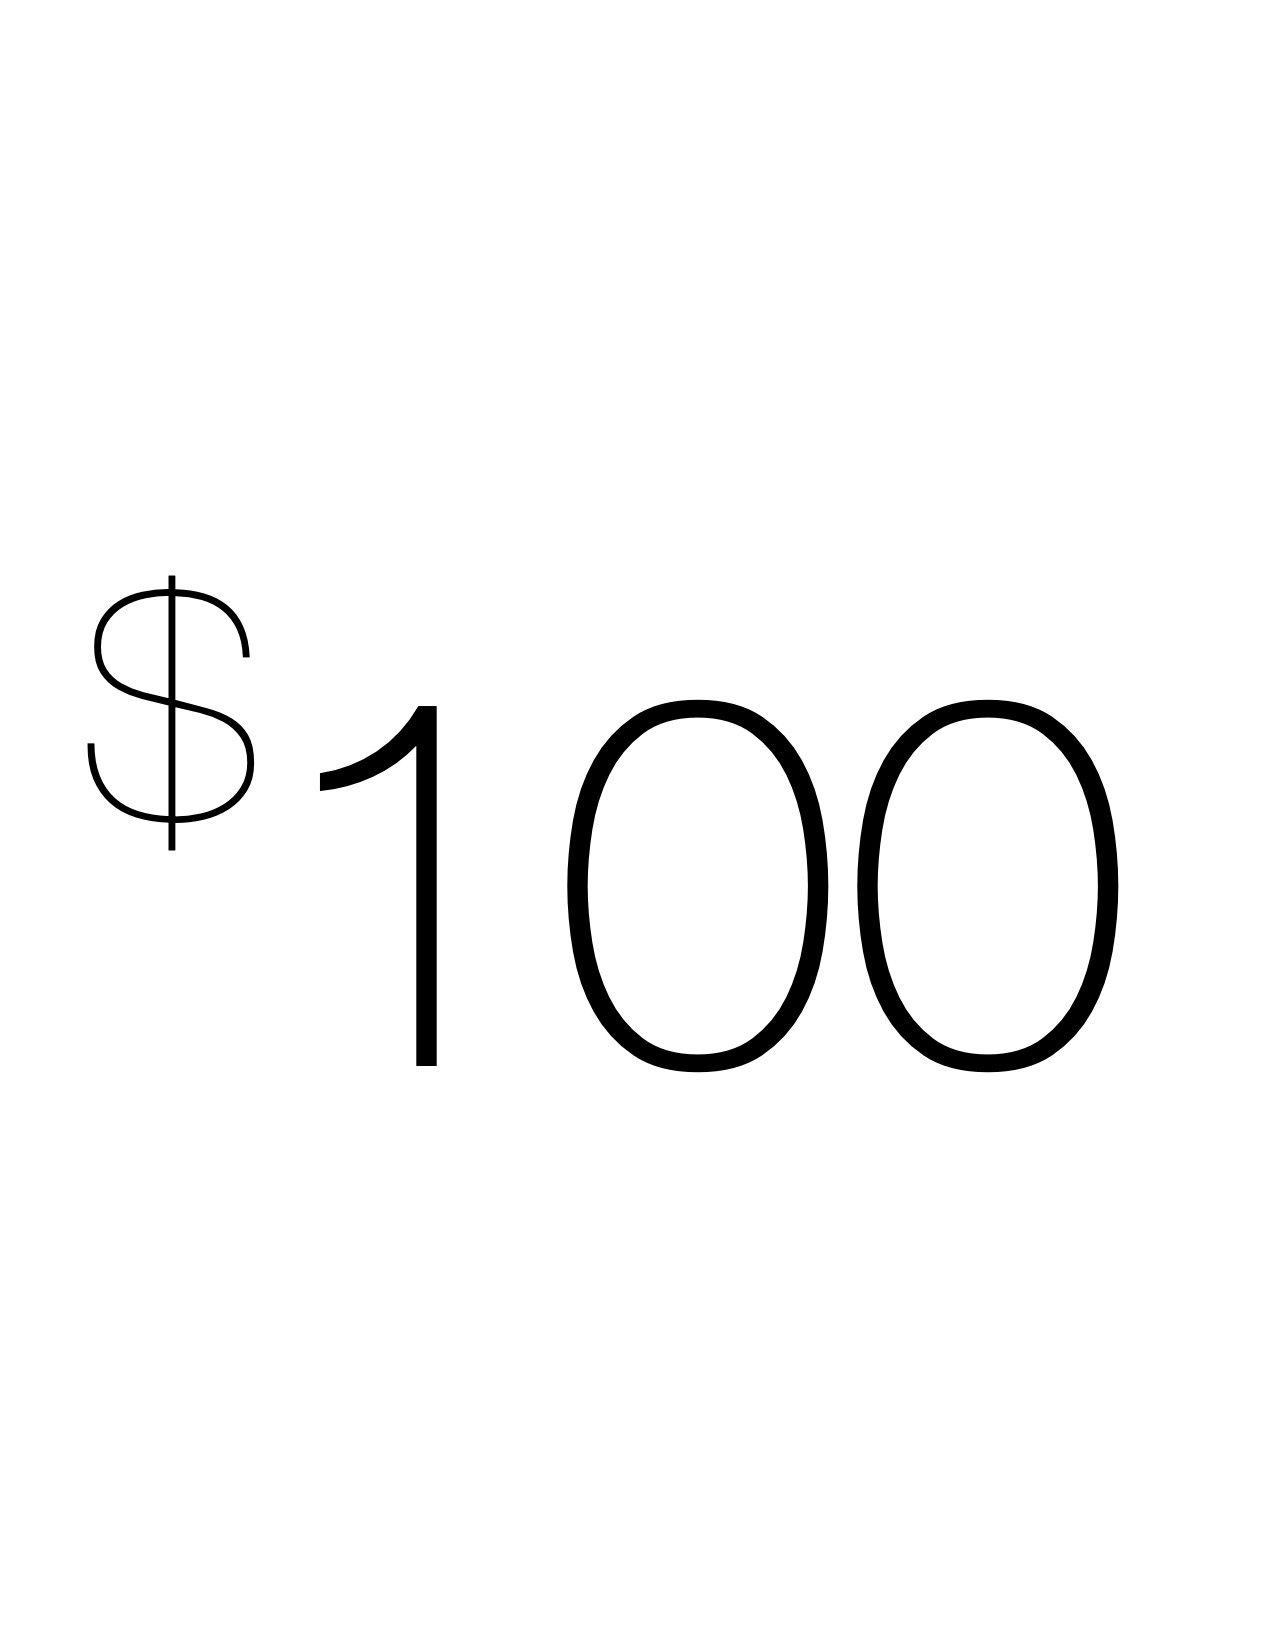 $100 Voucher